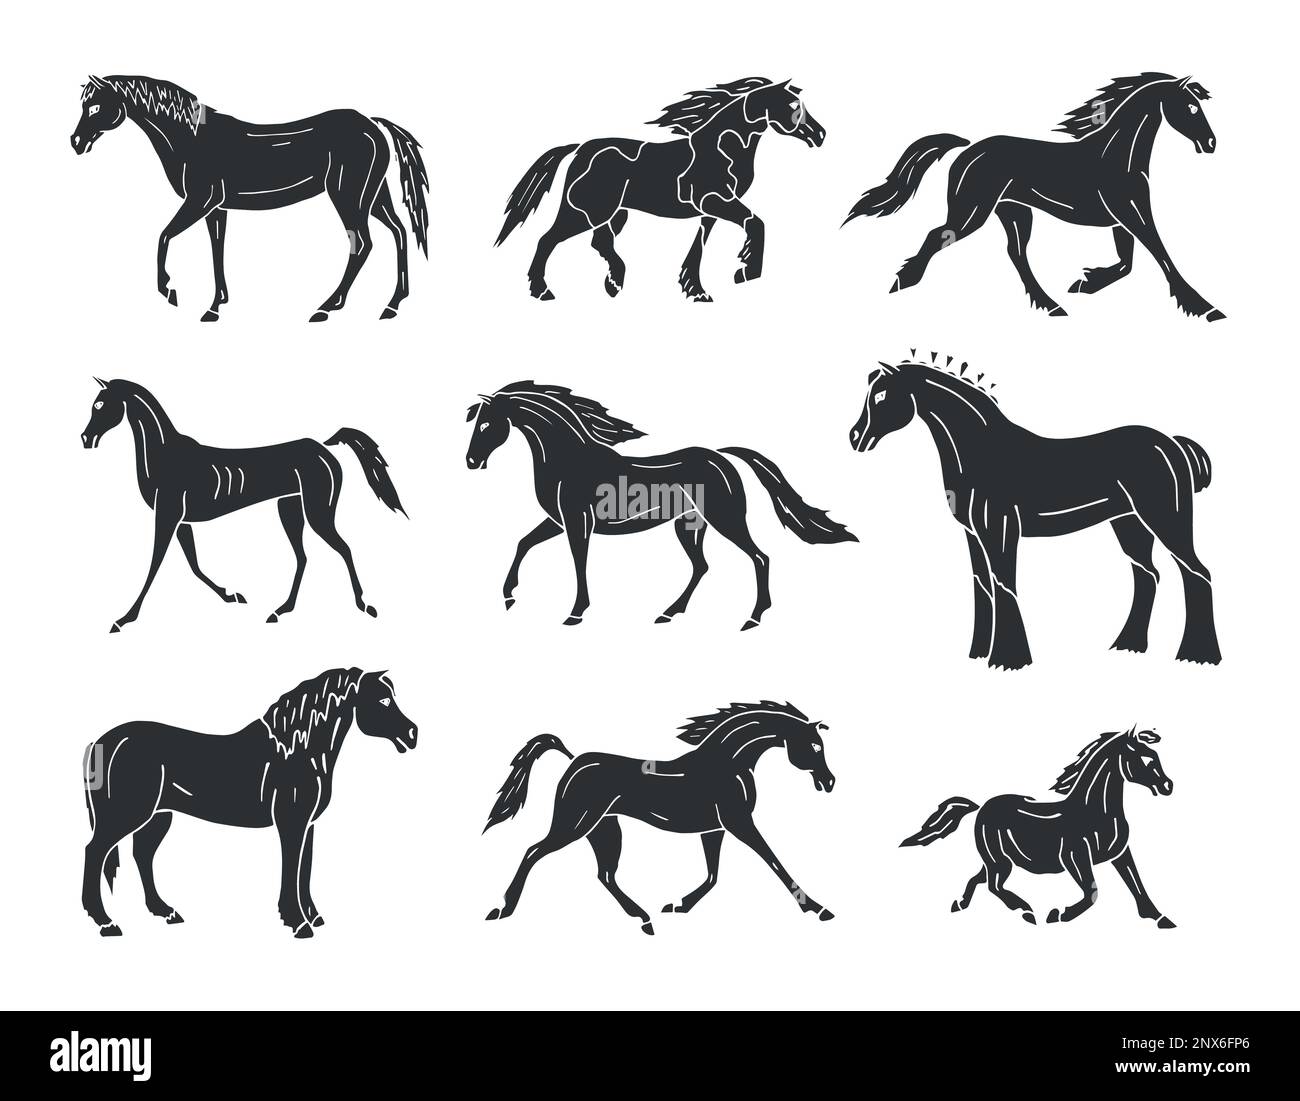 Vektorsatz handgezeichneter Zeichnungen schwarzer Pferde isoliert auf weißem Hintergrund Stock Vektor